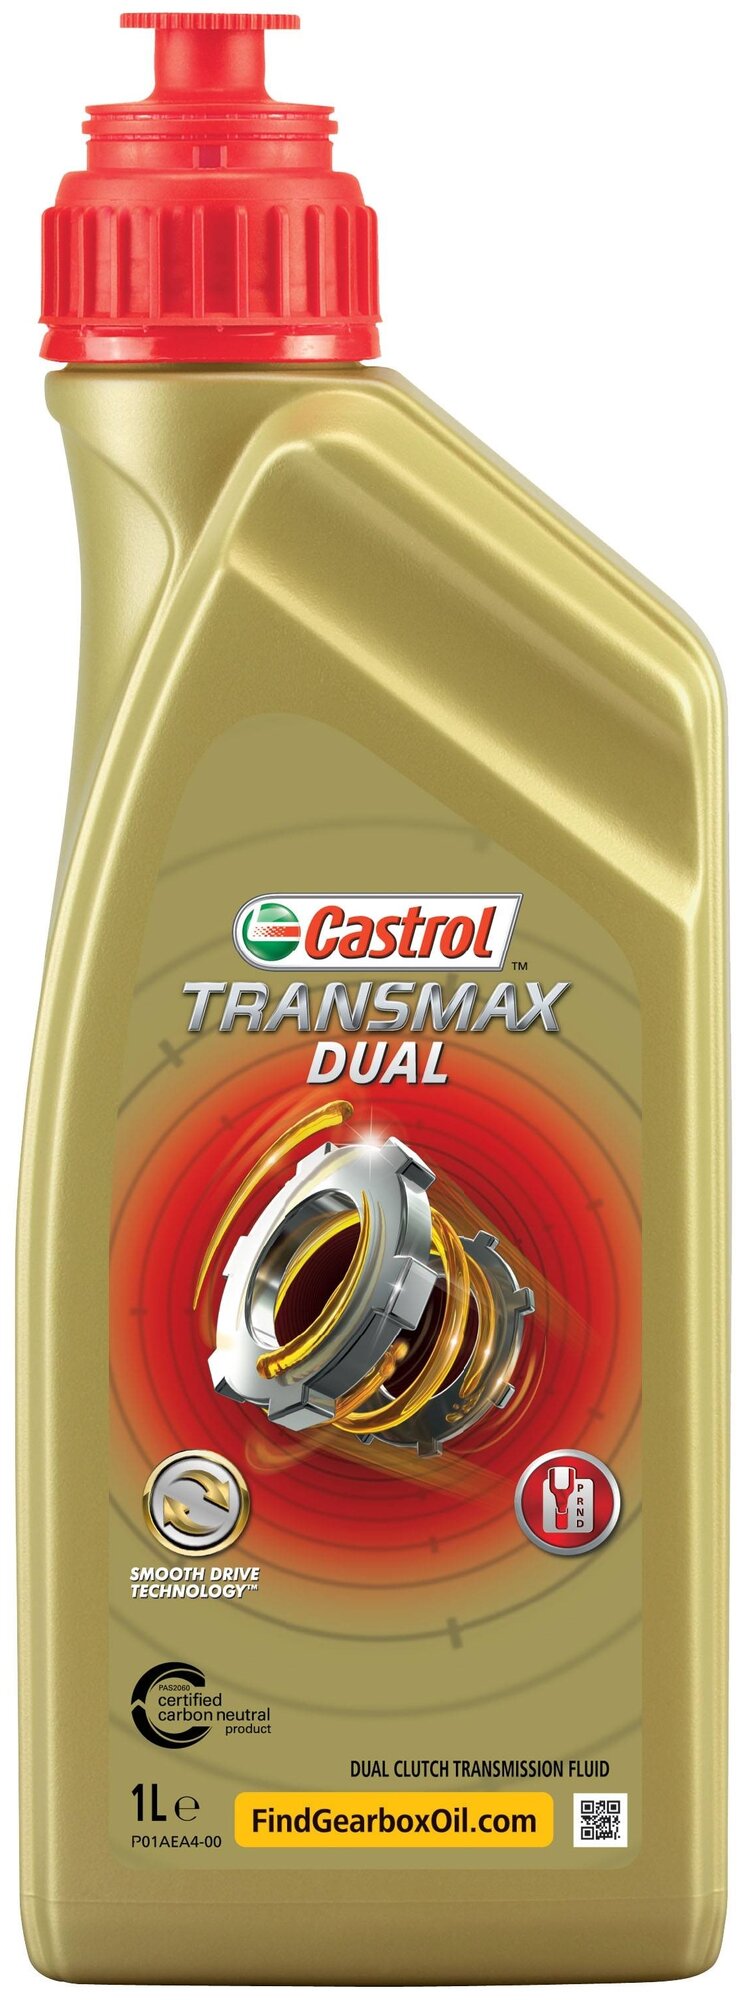 Масло трансмиссионное Castrol Transmax DUAL, 75W, 1 л